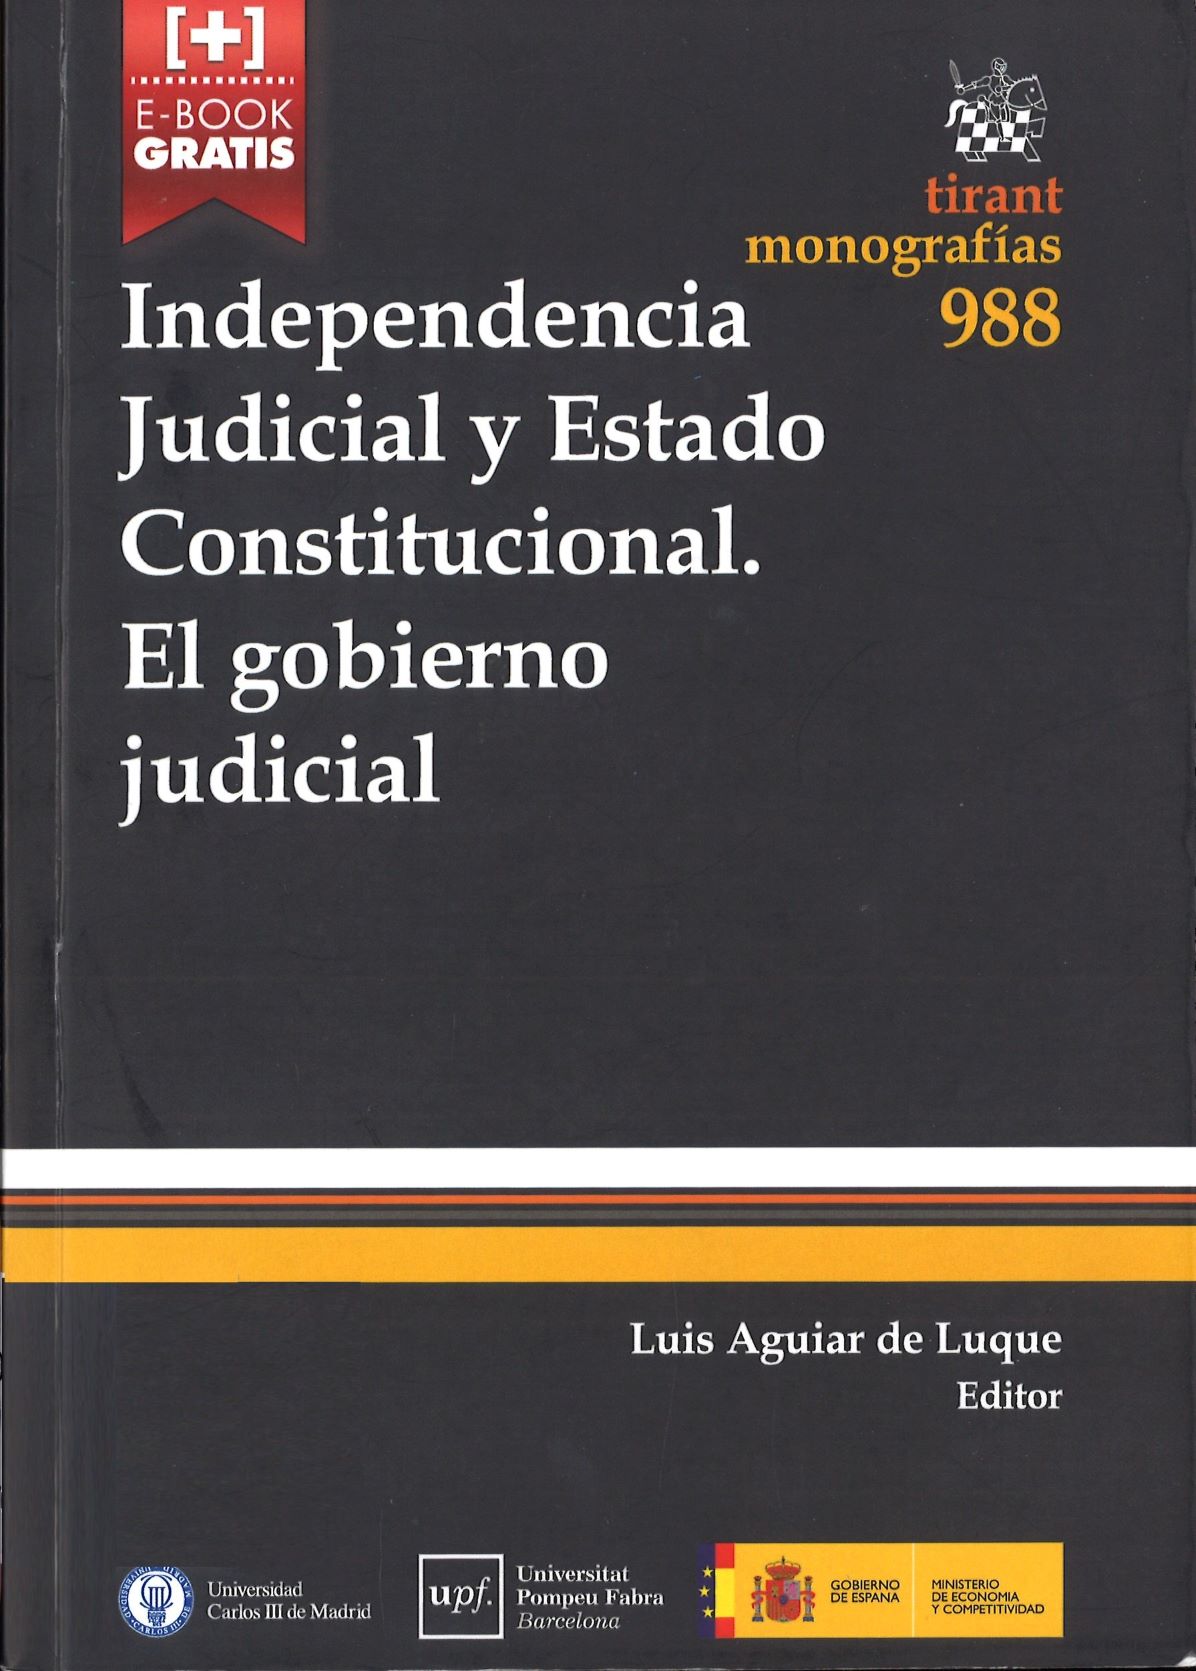 Imagen de portada del libro Independencia judicial y estado constitucional